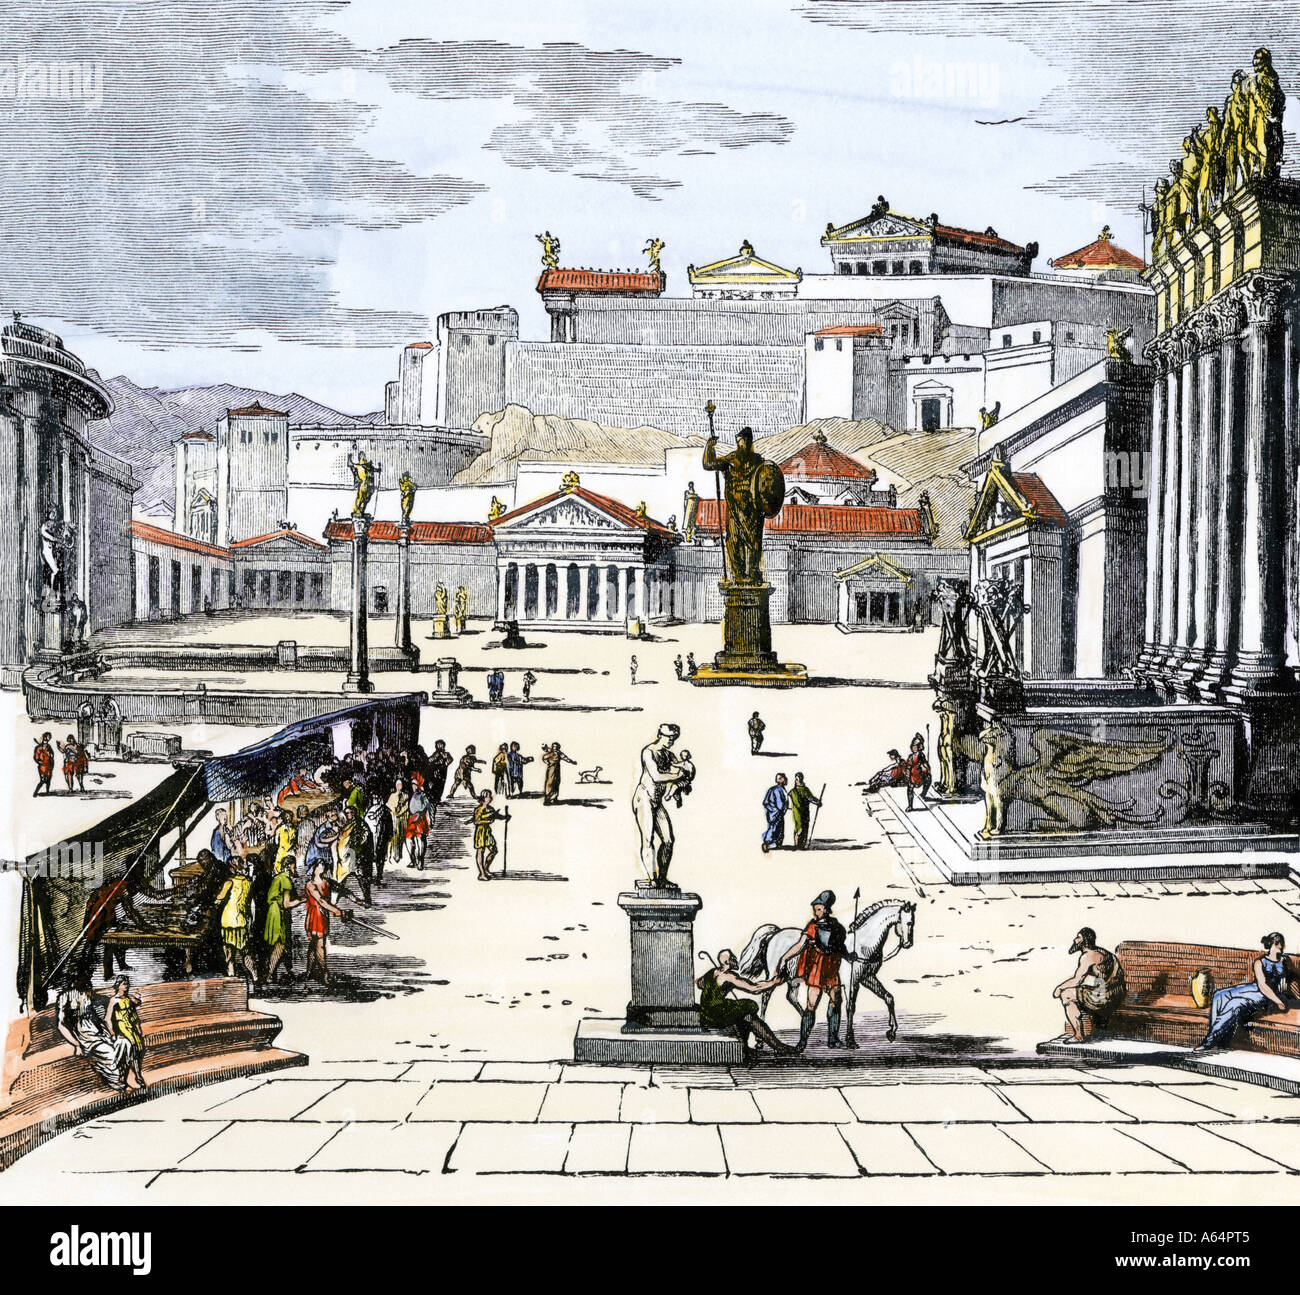 Place du marché de l'ancienne cité-état grecque de Sparte. À la main, gravure sur bois Banque D'Images